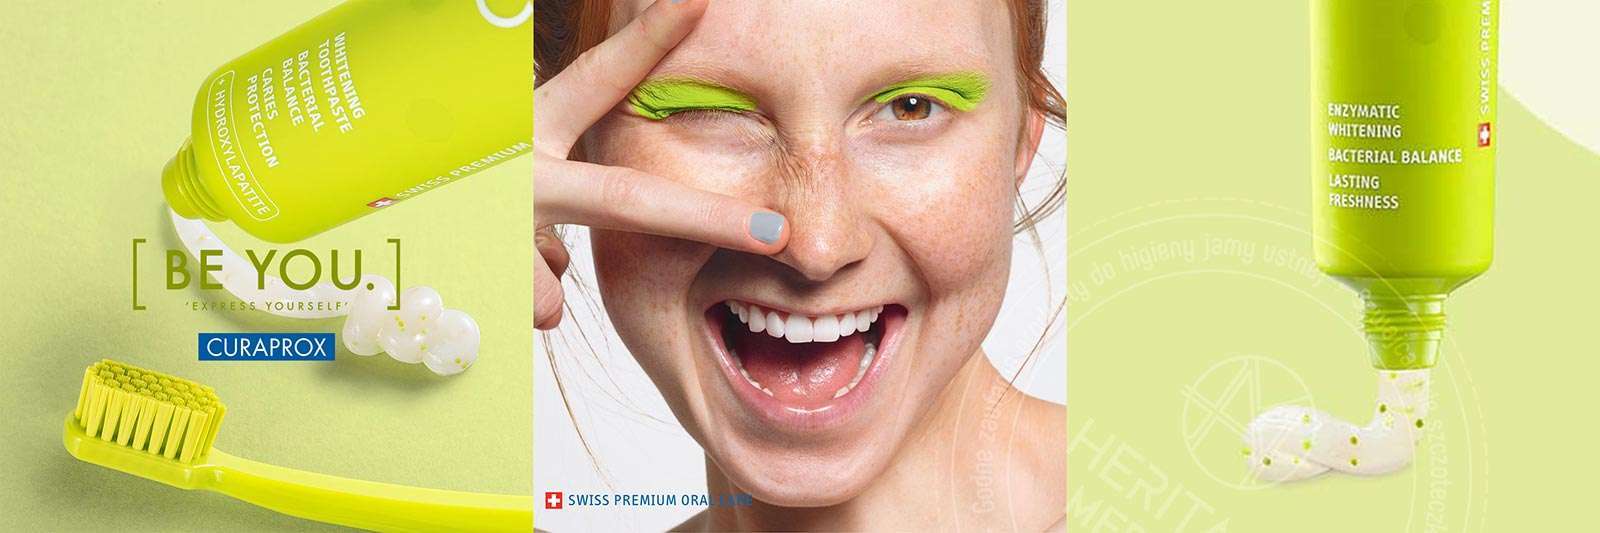 Zdrowie i piękne zęby dzięki produktom do higieny jamy ustnej marki CURAPROX